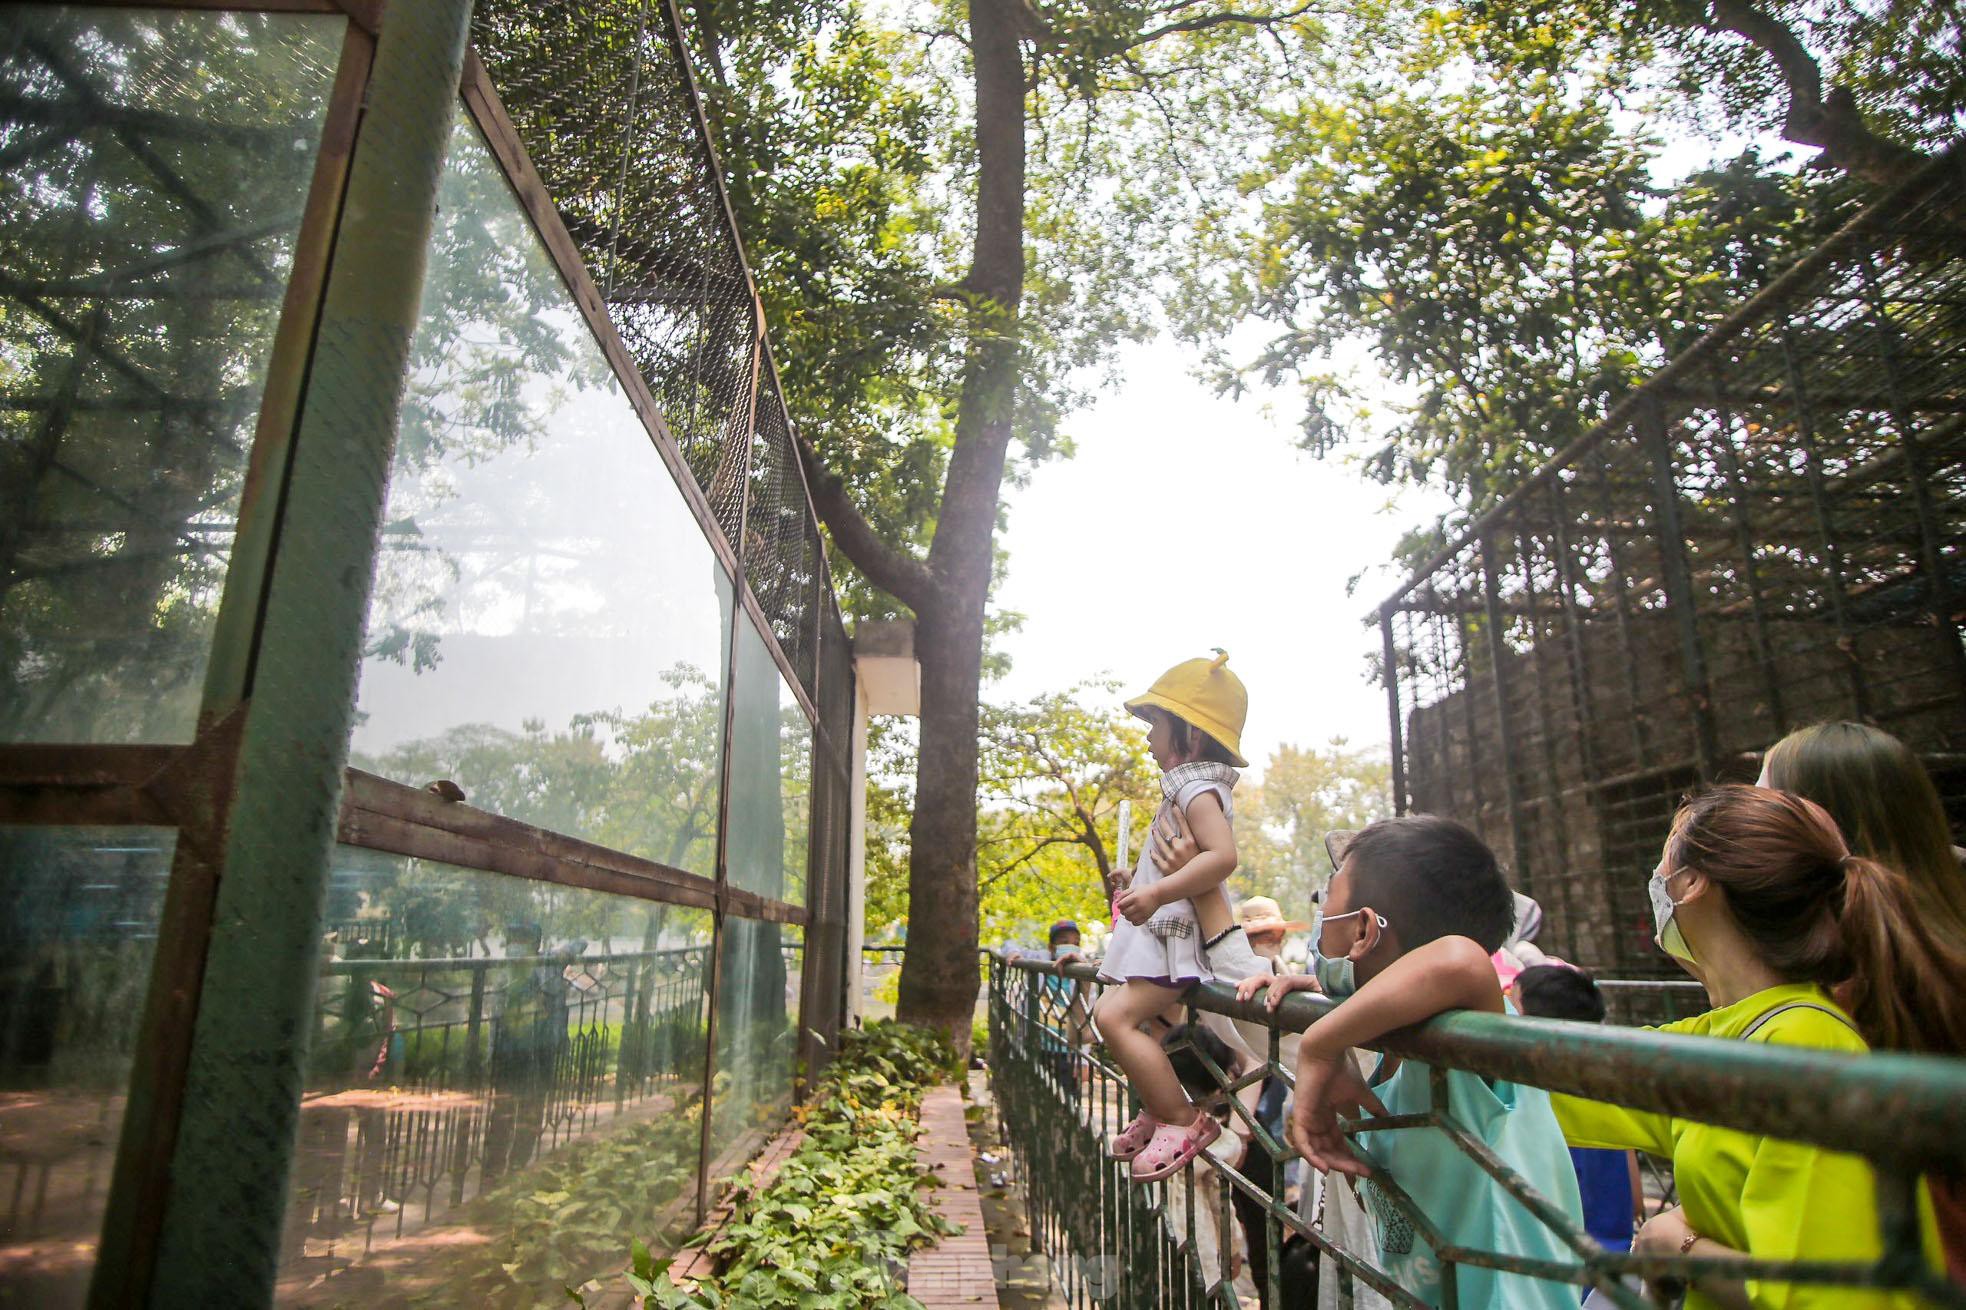 Ngàn người đổ về vườn thú Hà Nội trong ngày đầu nghỉ lễ - Ảnh 12.